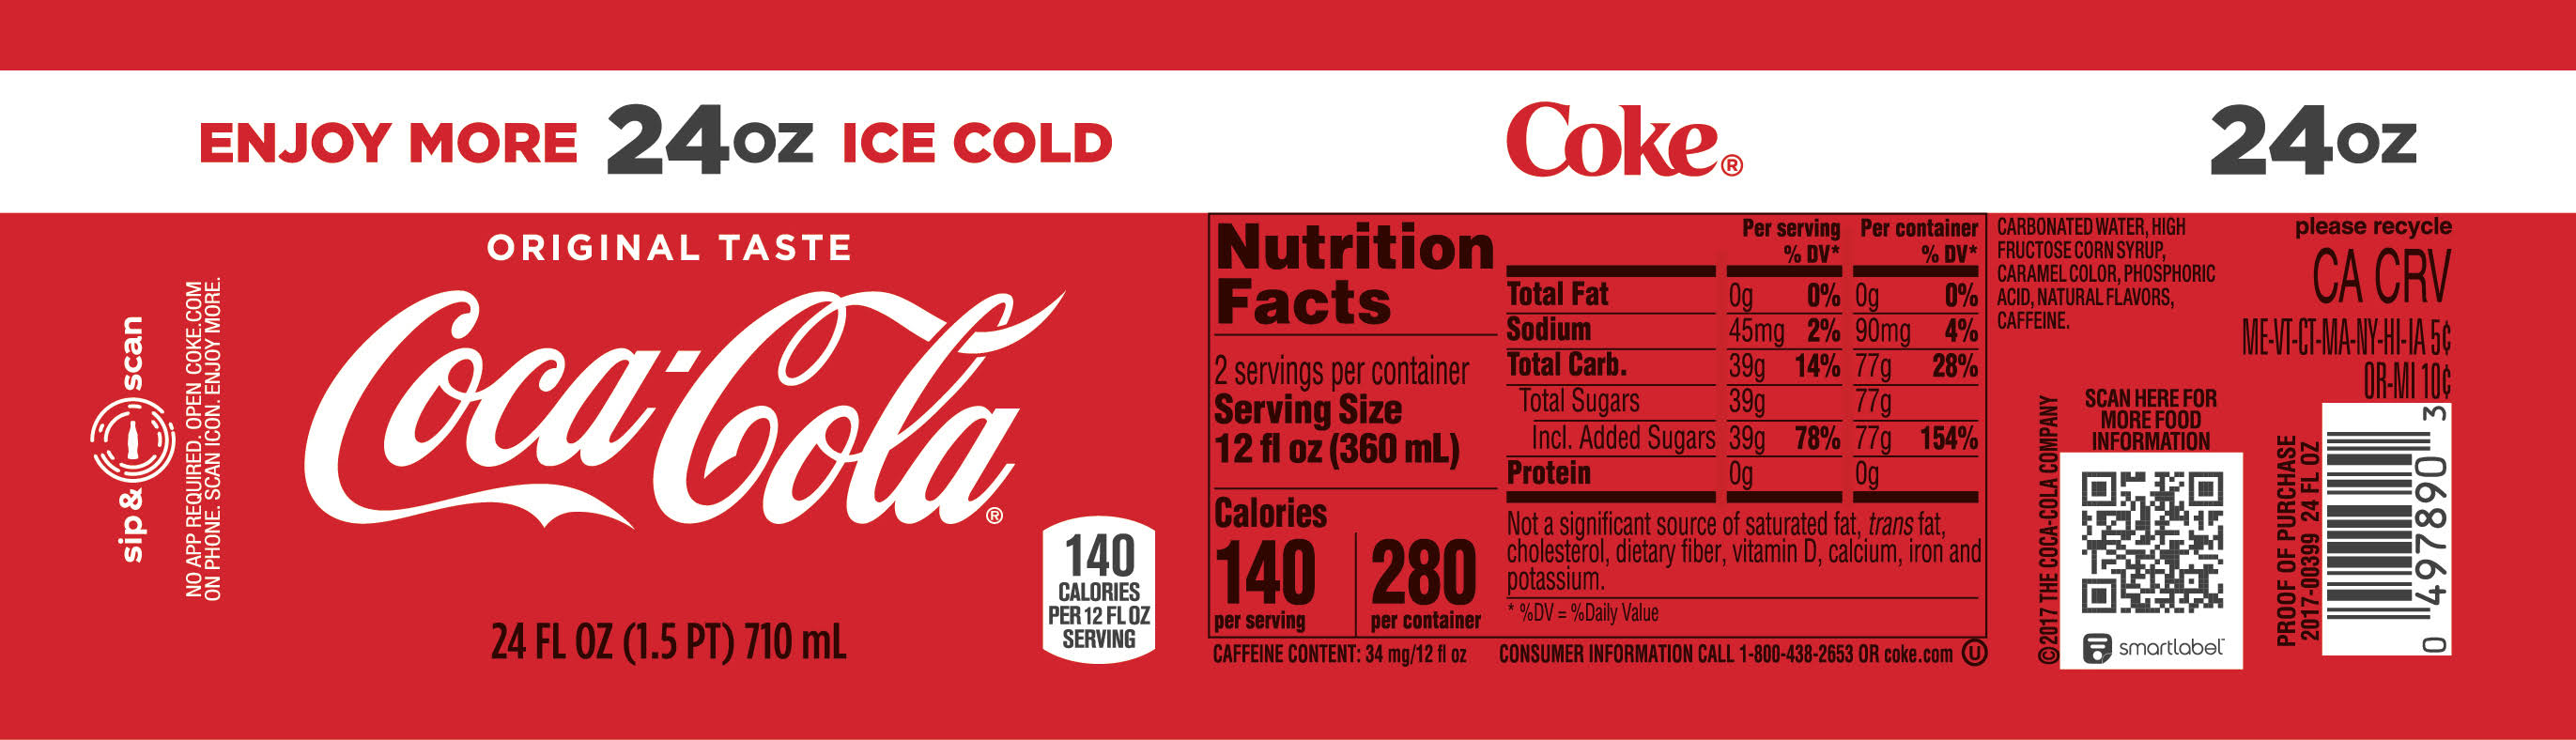 Coca-Cola Cola Soda - 24oz